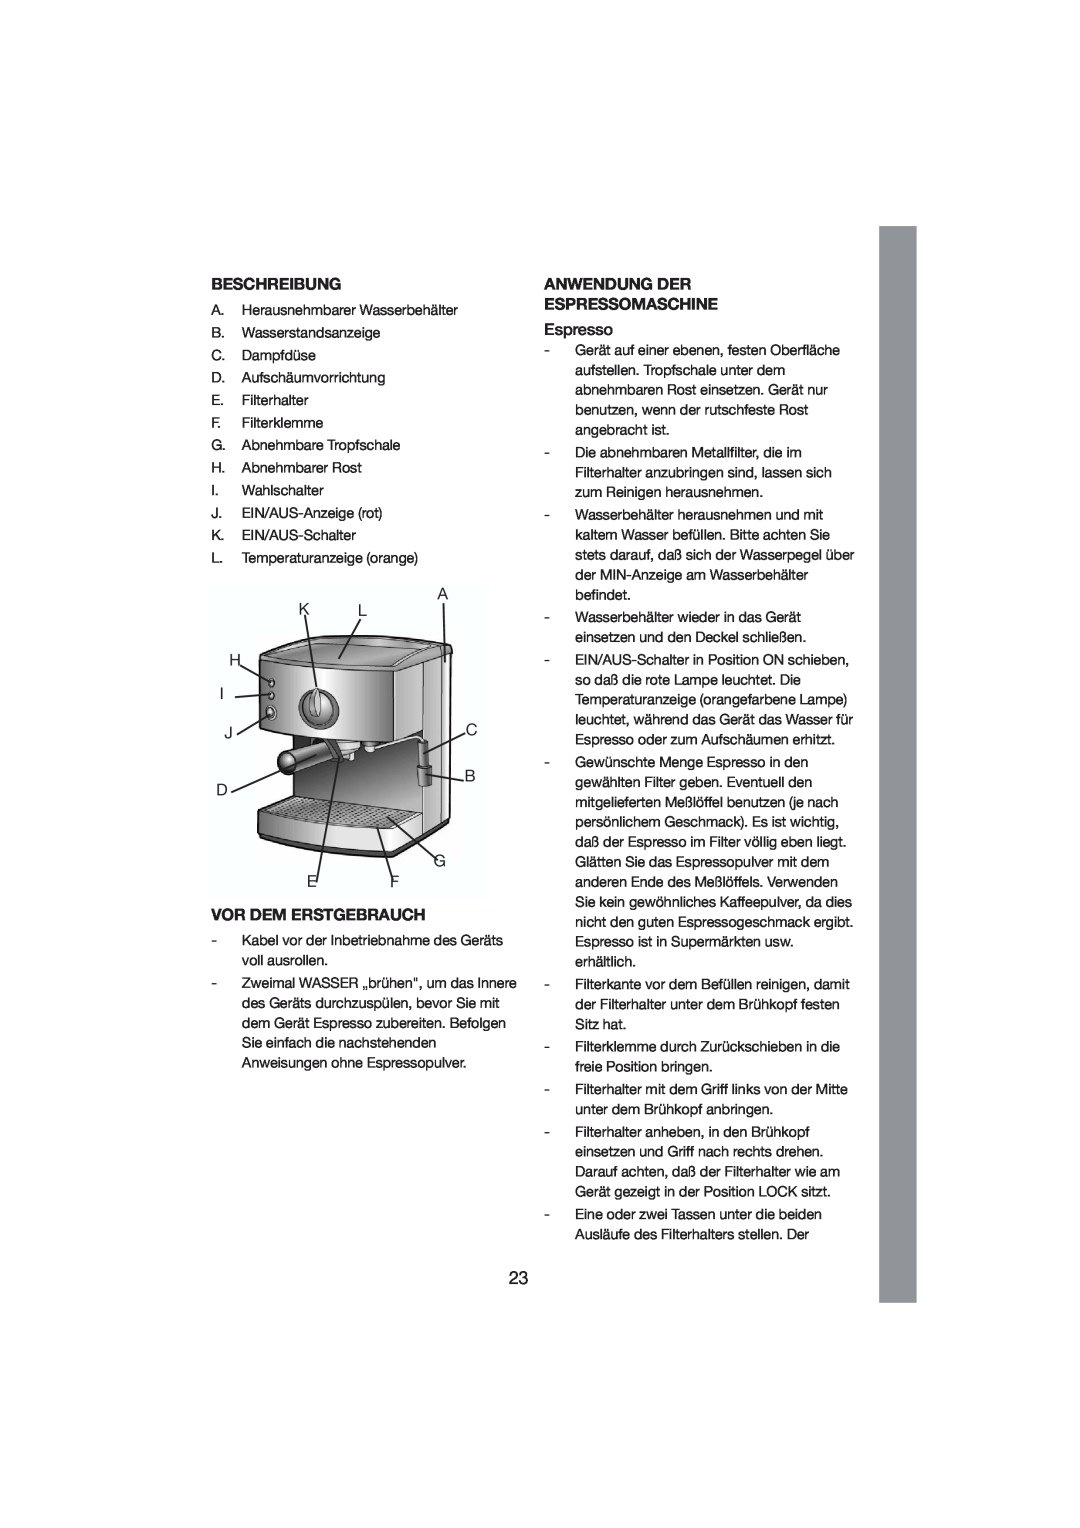 Melissa 245-007 manual Beschreibung, Vor Dem Erstgebrauch, Anwendung Der Espressomaschine 